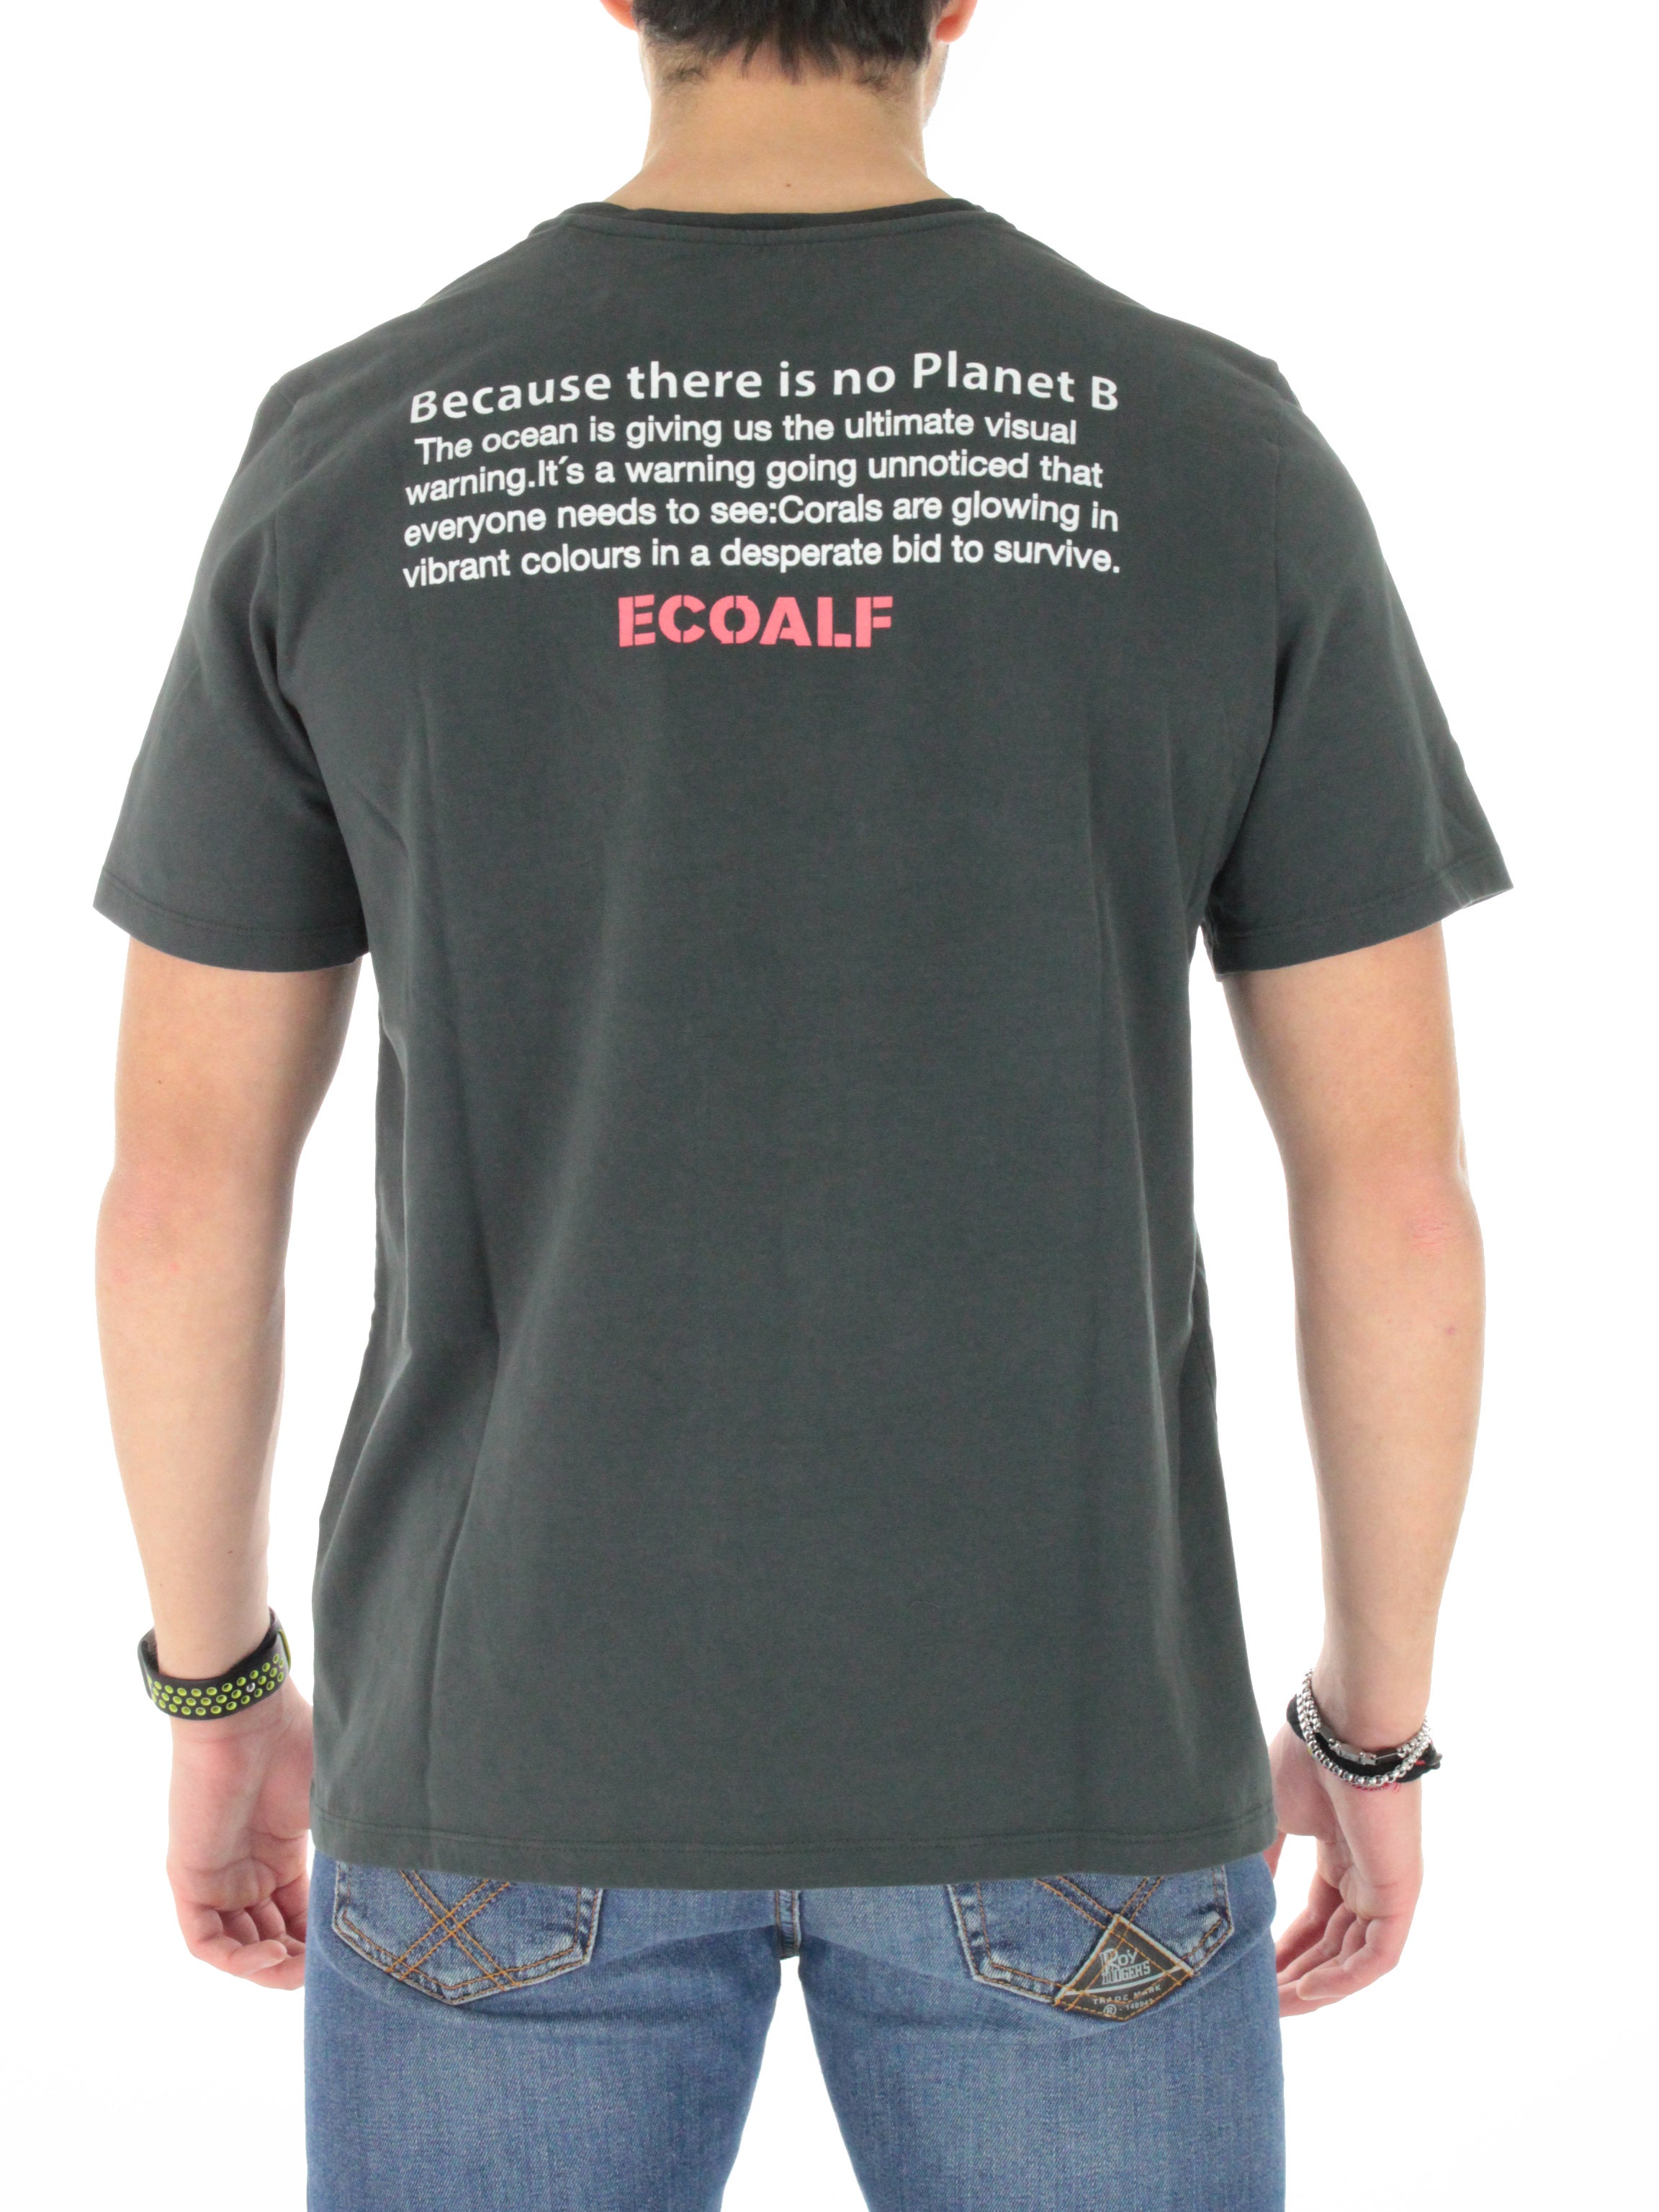 Ecoalf t-shirt saonalf